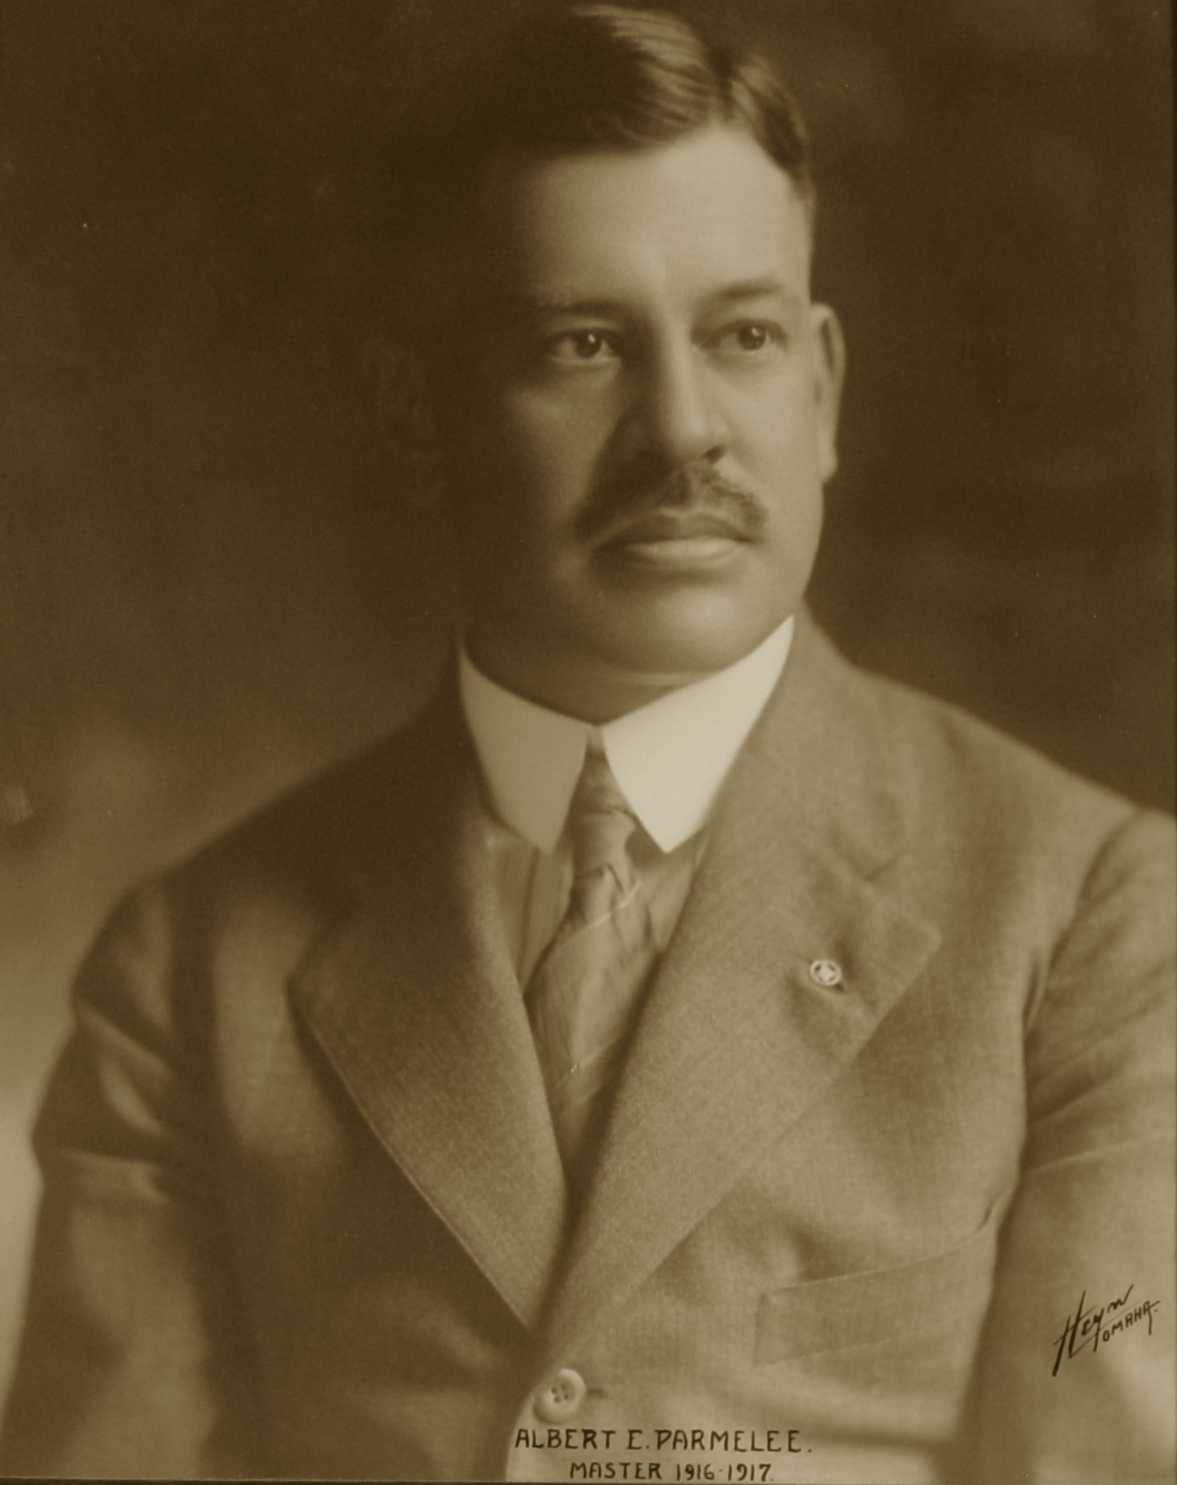 Albert Parmelee, 1916-1917